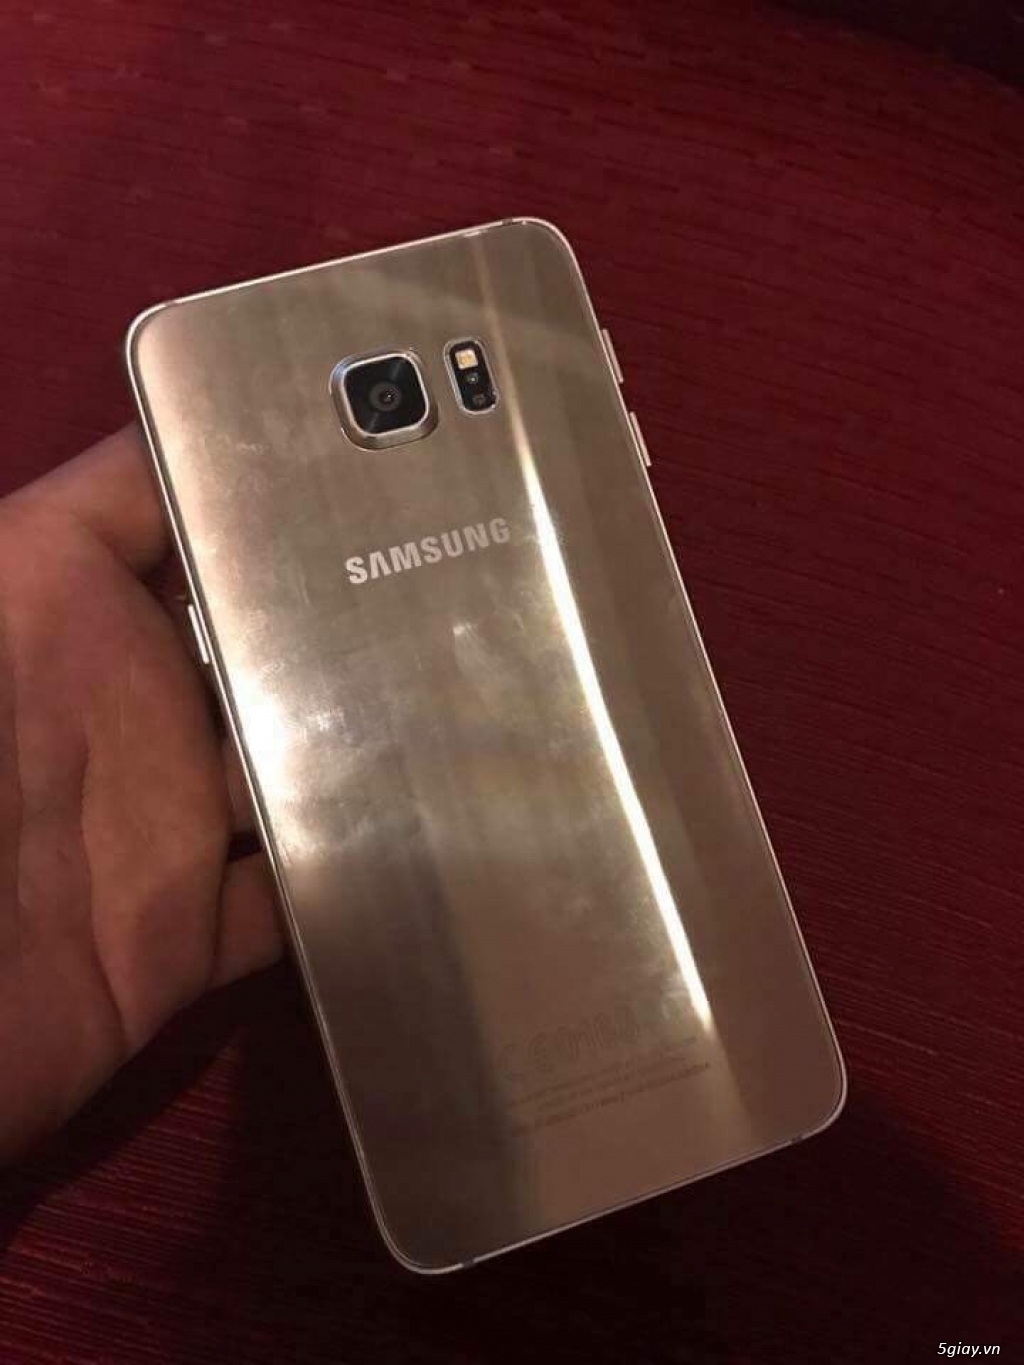 Samsung s6 edge plus gold chính hãng 99% máy e xài kỹ lắm k 1 lỗi lầm - 4